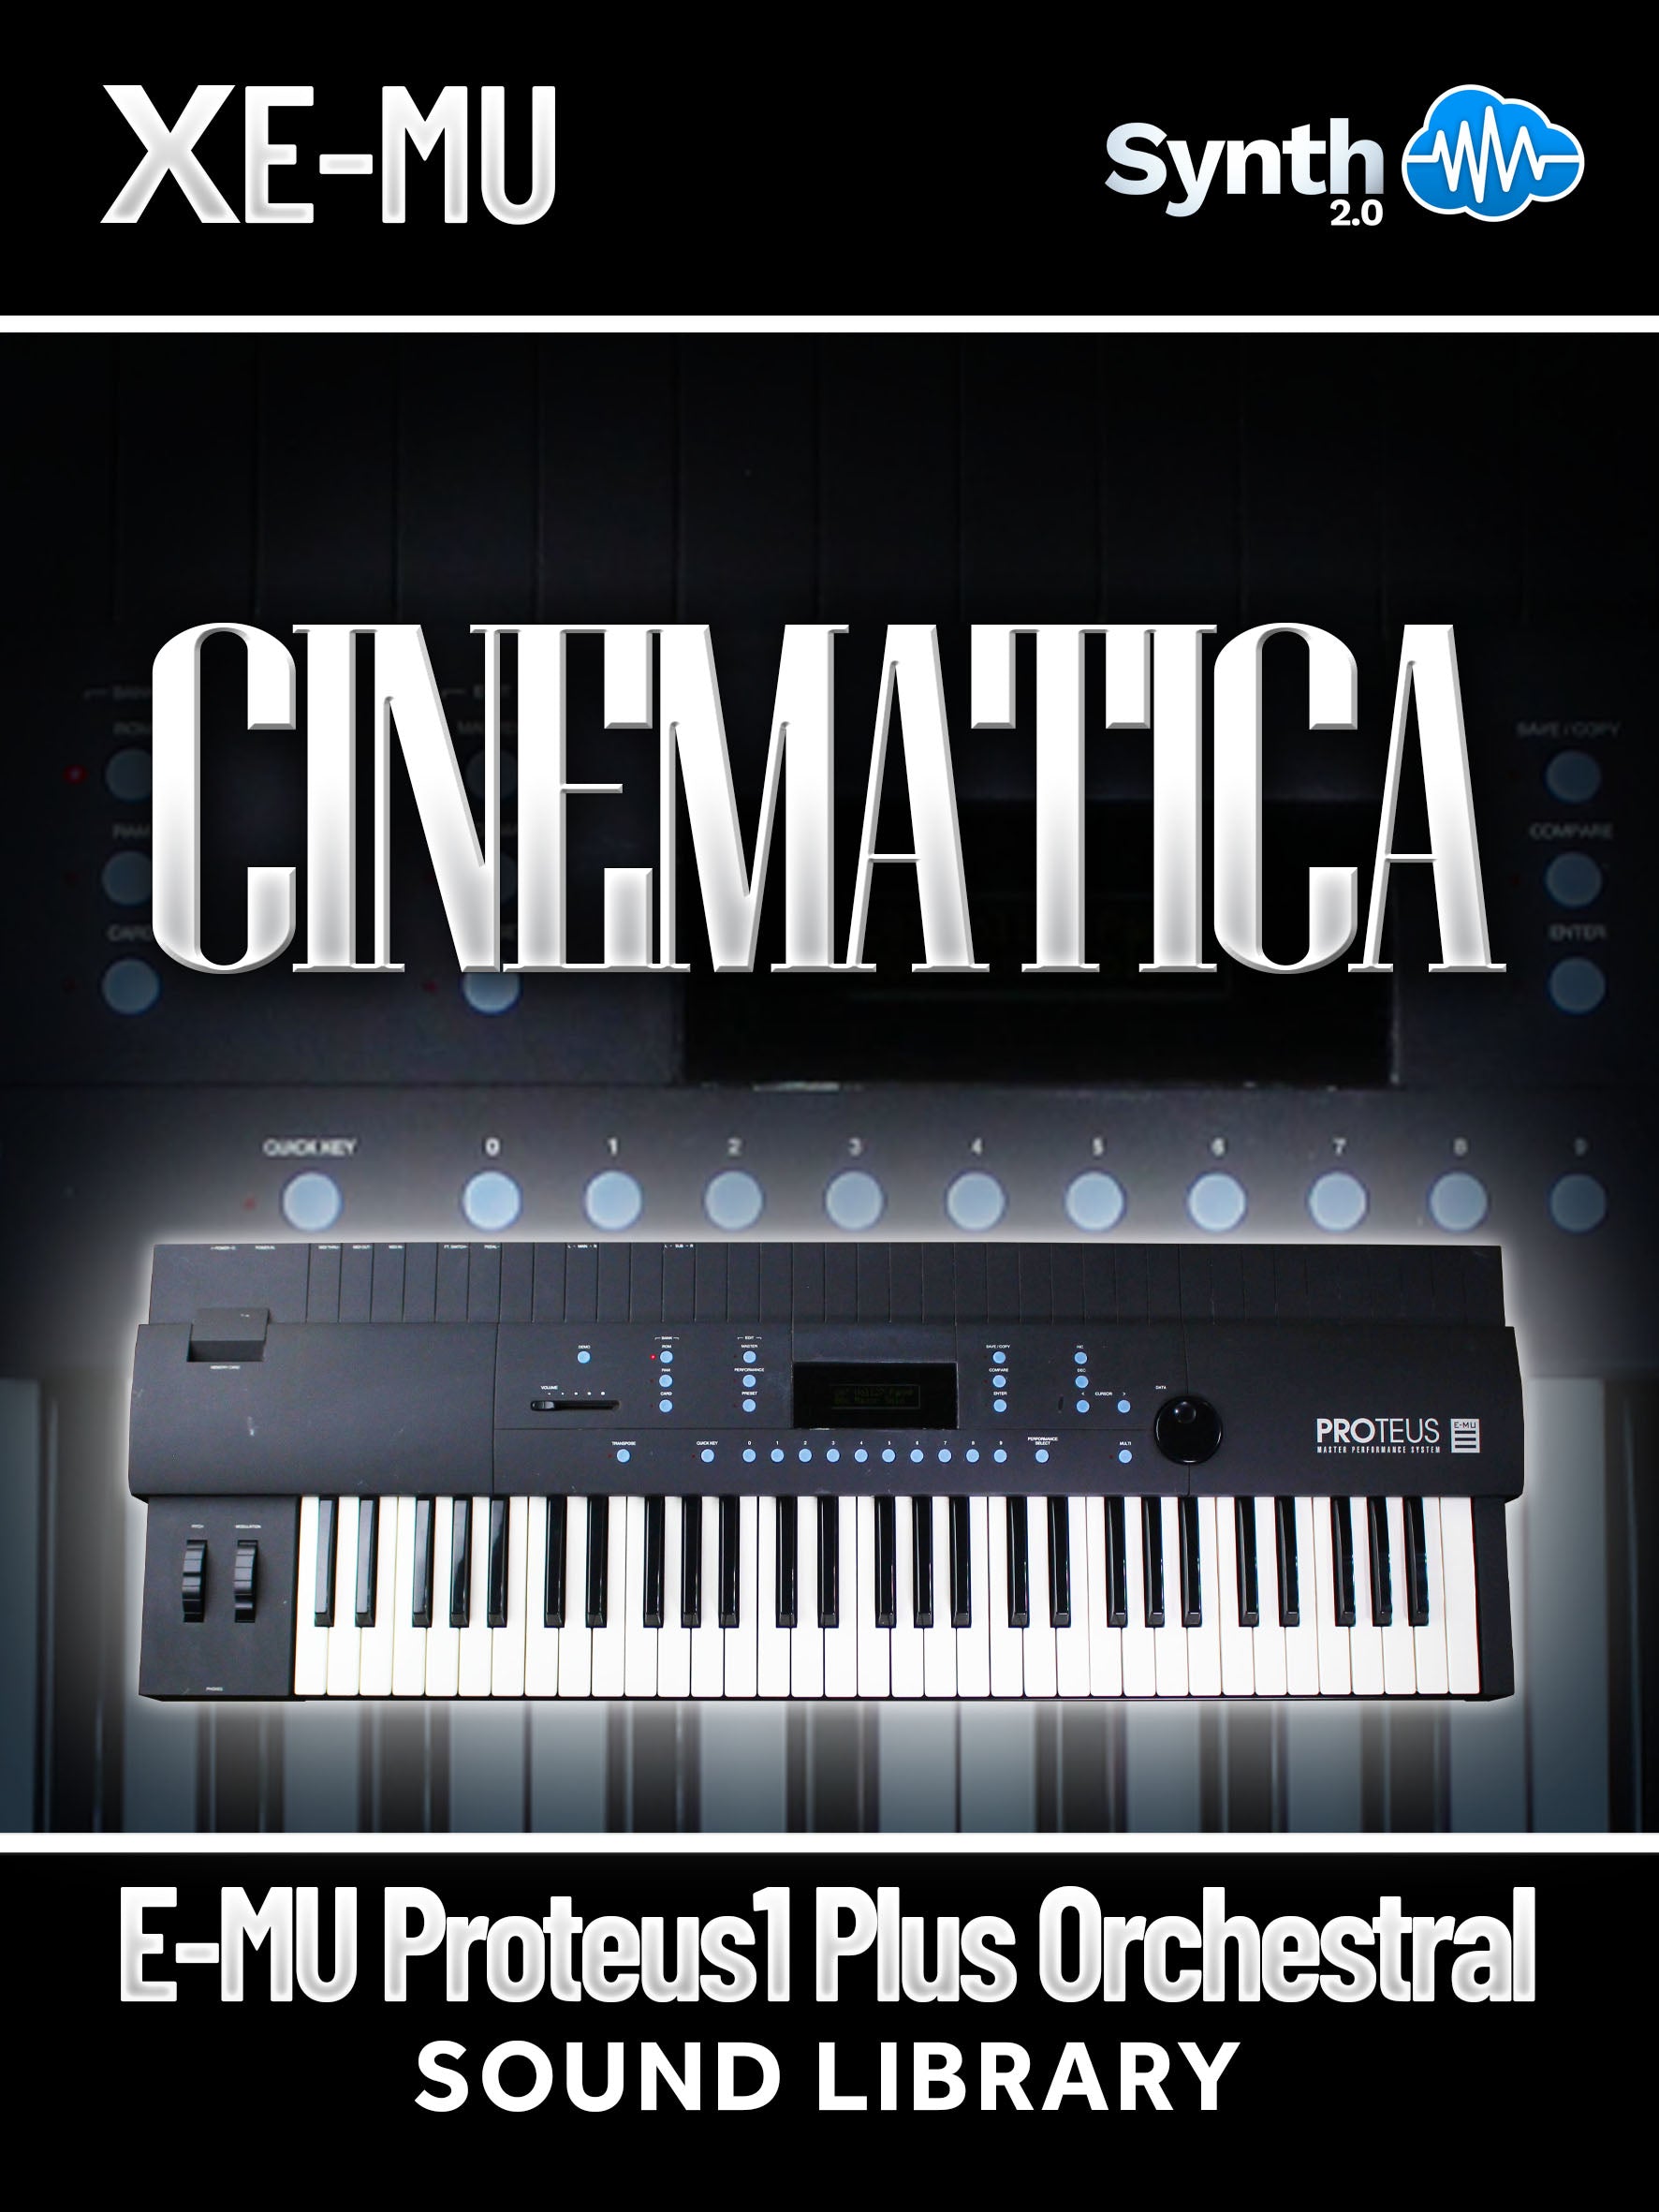 LFO002 - Cinematica - E-MU Proteus 1 plus Orchestral ( 100 presets )